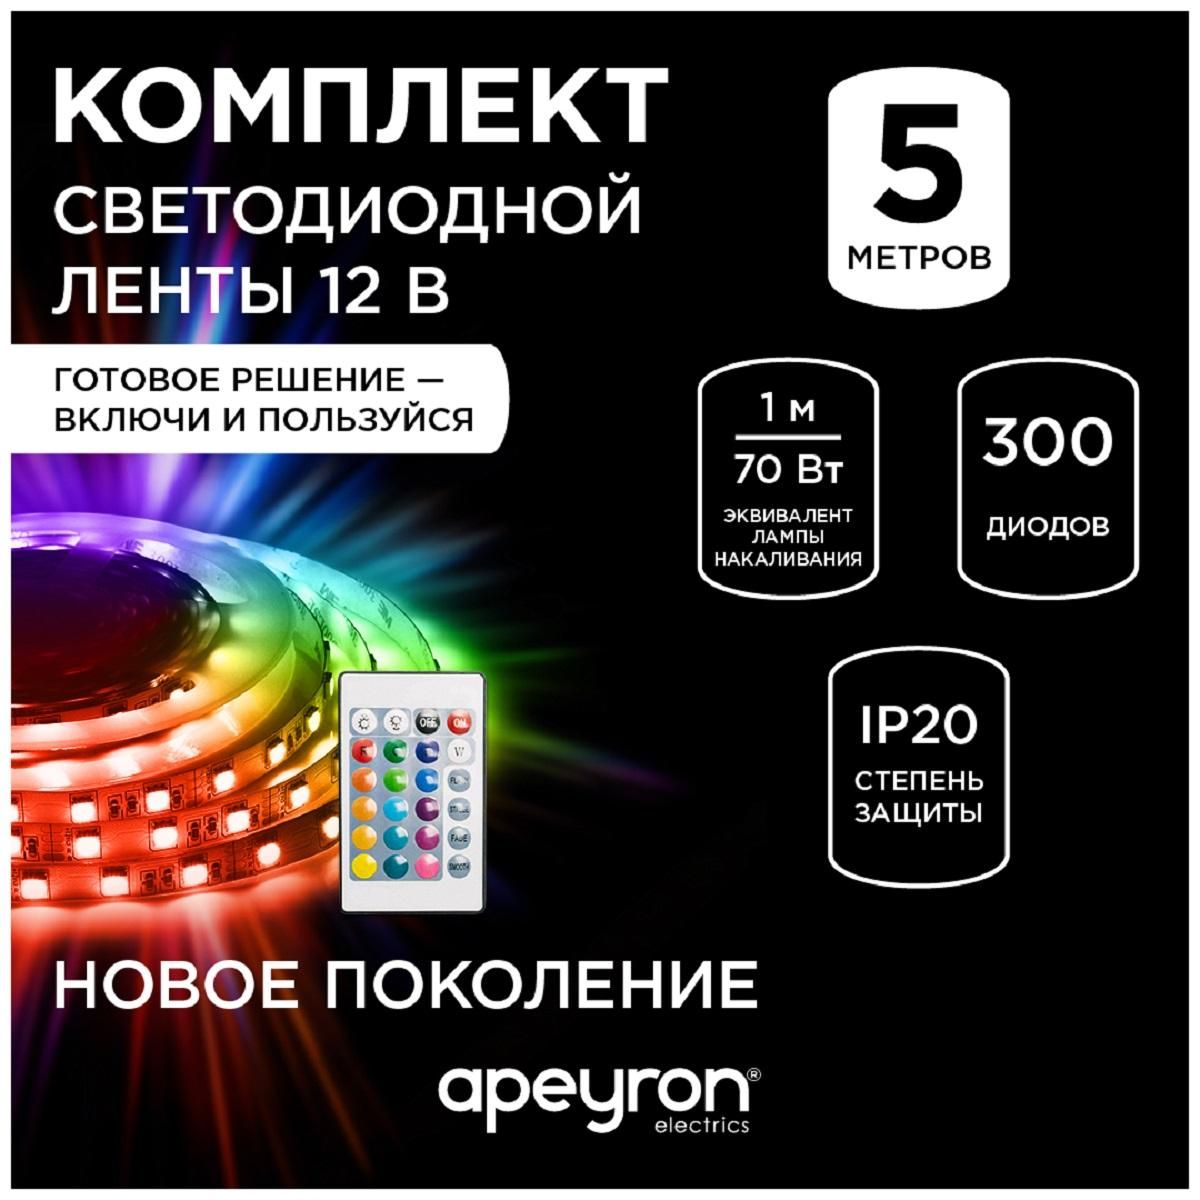 Комплект светодиодной ленты smd5050 60д/м 12В IP20 5м RGB Apeyron - Фото 8